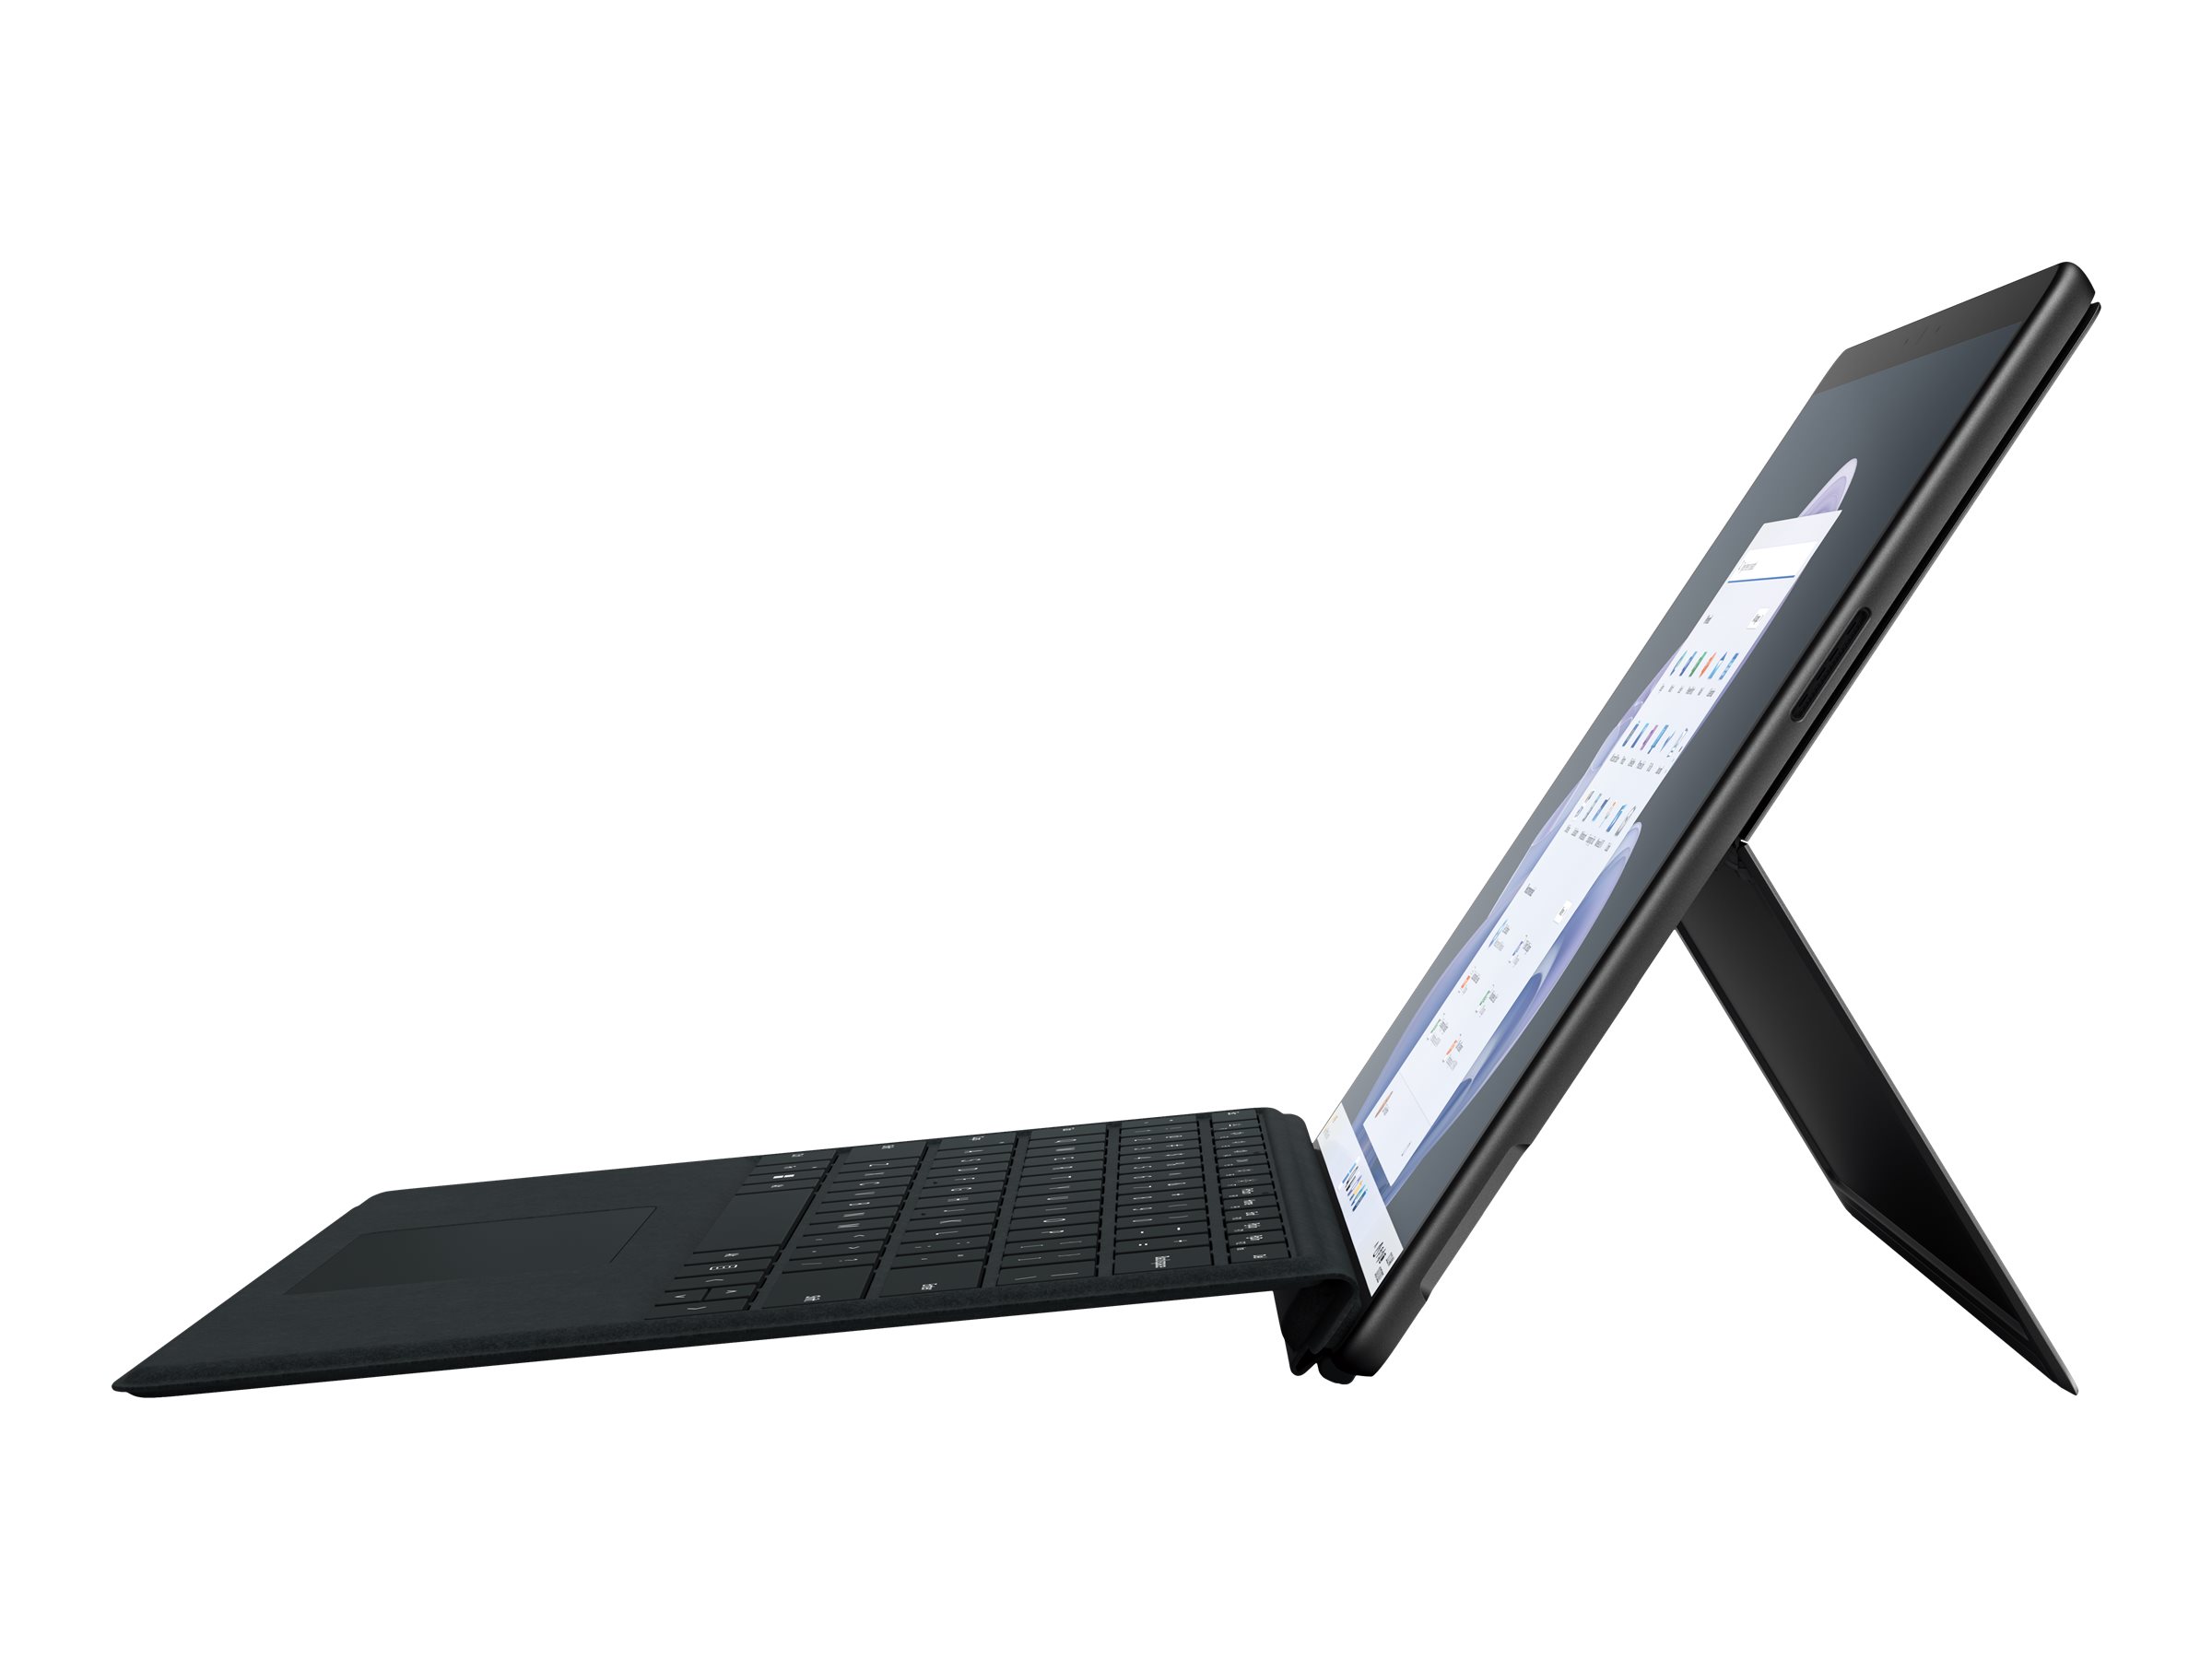 Microsoft Surface Pro 9 for Business - Tablette - Intel Core i5 - 1245U / jusqu'à 4.4 GHz - Evo - Win 11 Pro - Carte graphique Intel Iris Xe - 16 Go RAM - 256 Go SSD - 13" écran tactile 2880 x 1920 @ 120 Hz - Wi-Fi 6E - graphite - QIA-00022 - Ordinateurs portables